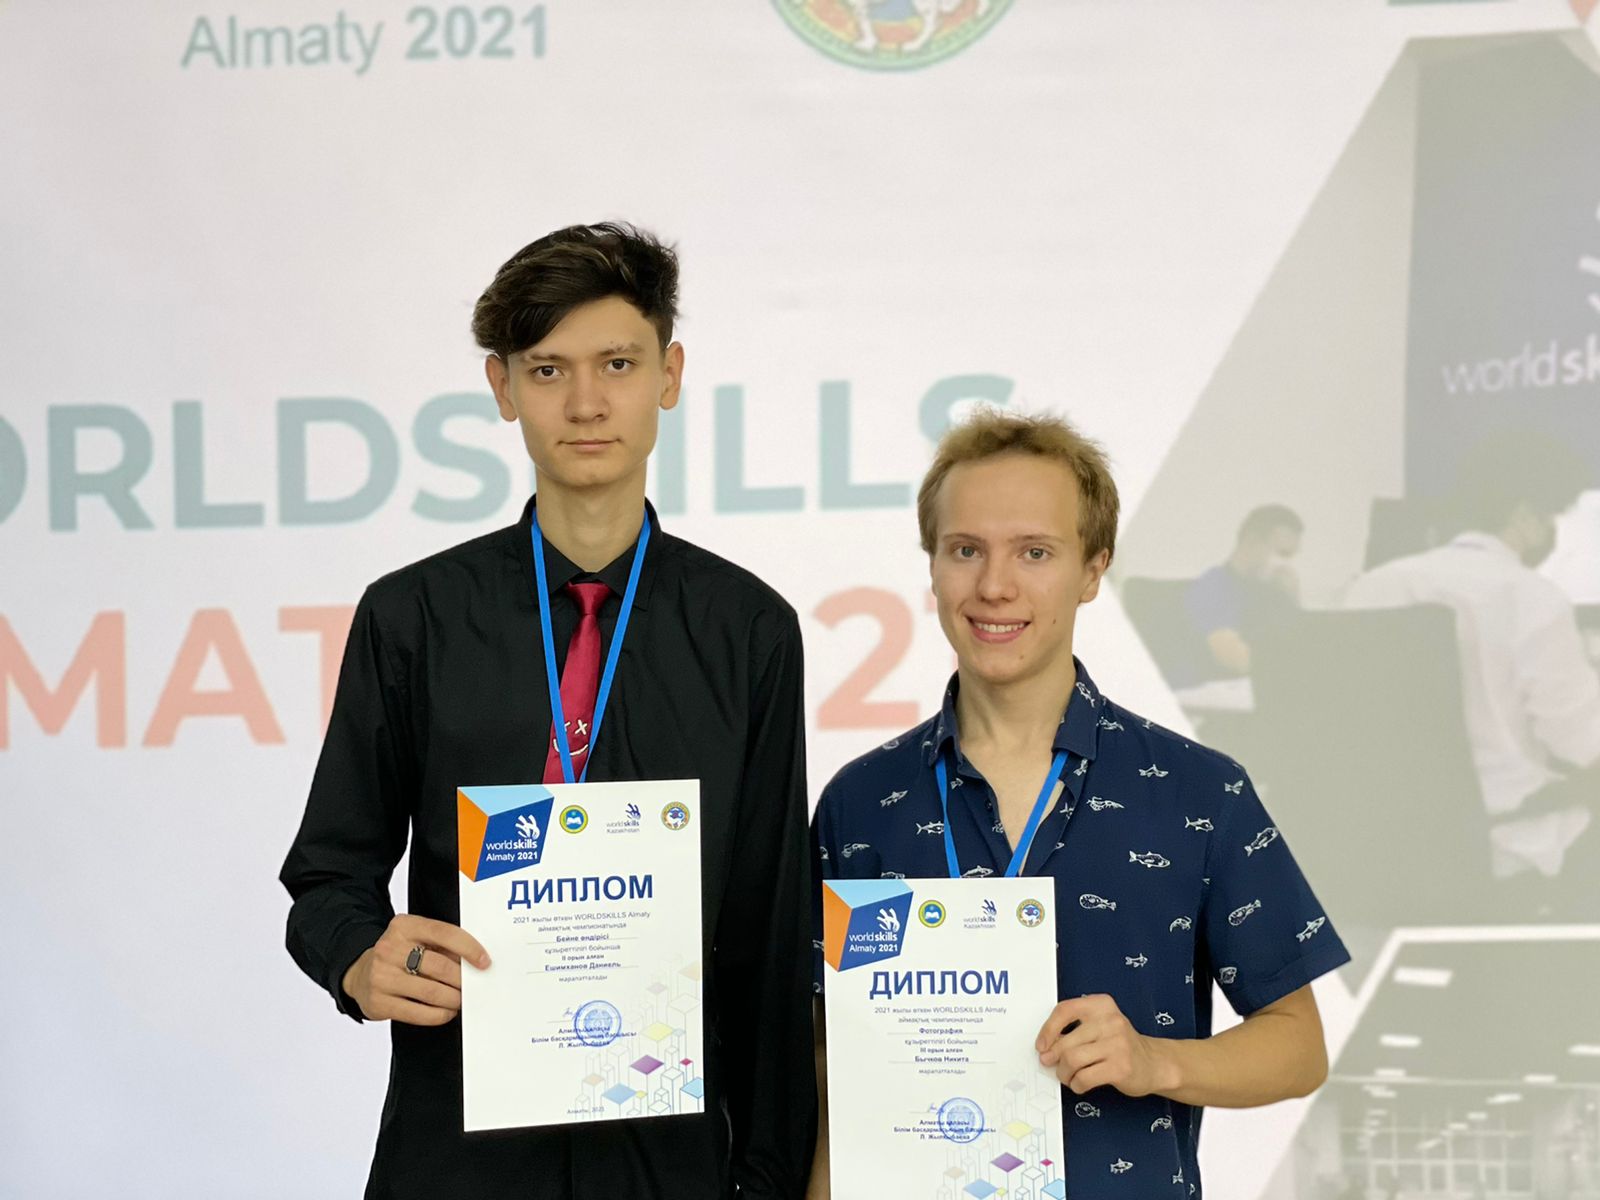 Вот и закончился Региональный чемпионат WorldSkills Almaty 2021